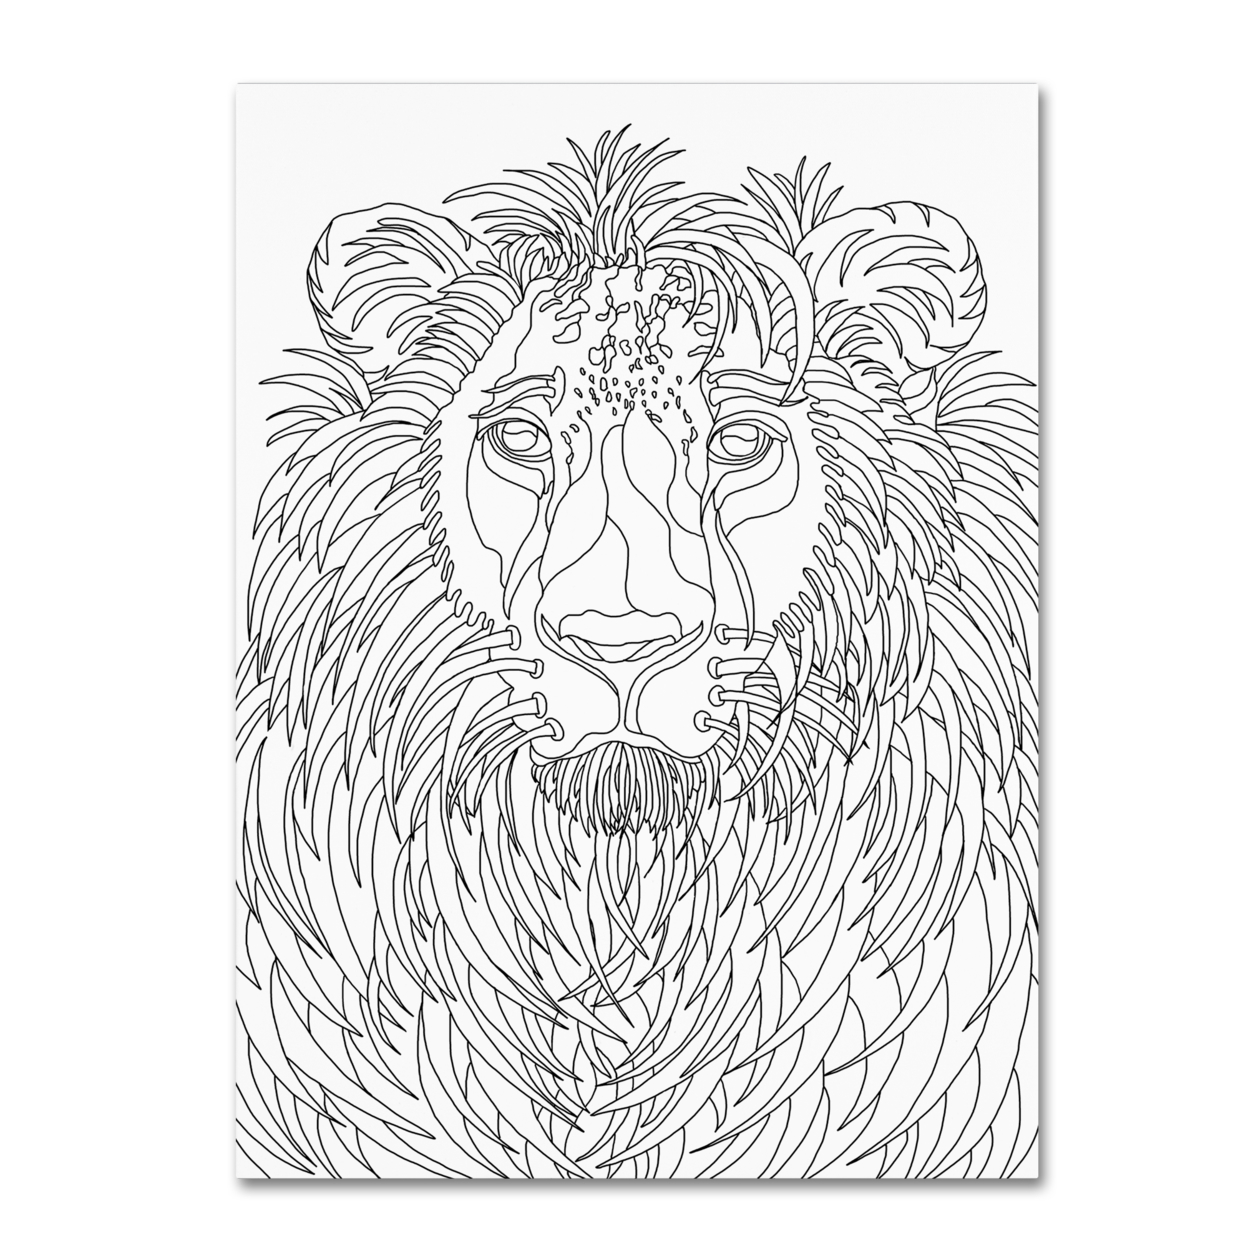 Kathy G. Ahrens 'Lion' Canvas Wall Art 35 X 47 Inches